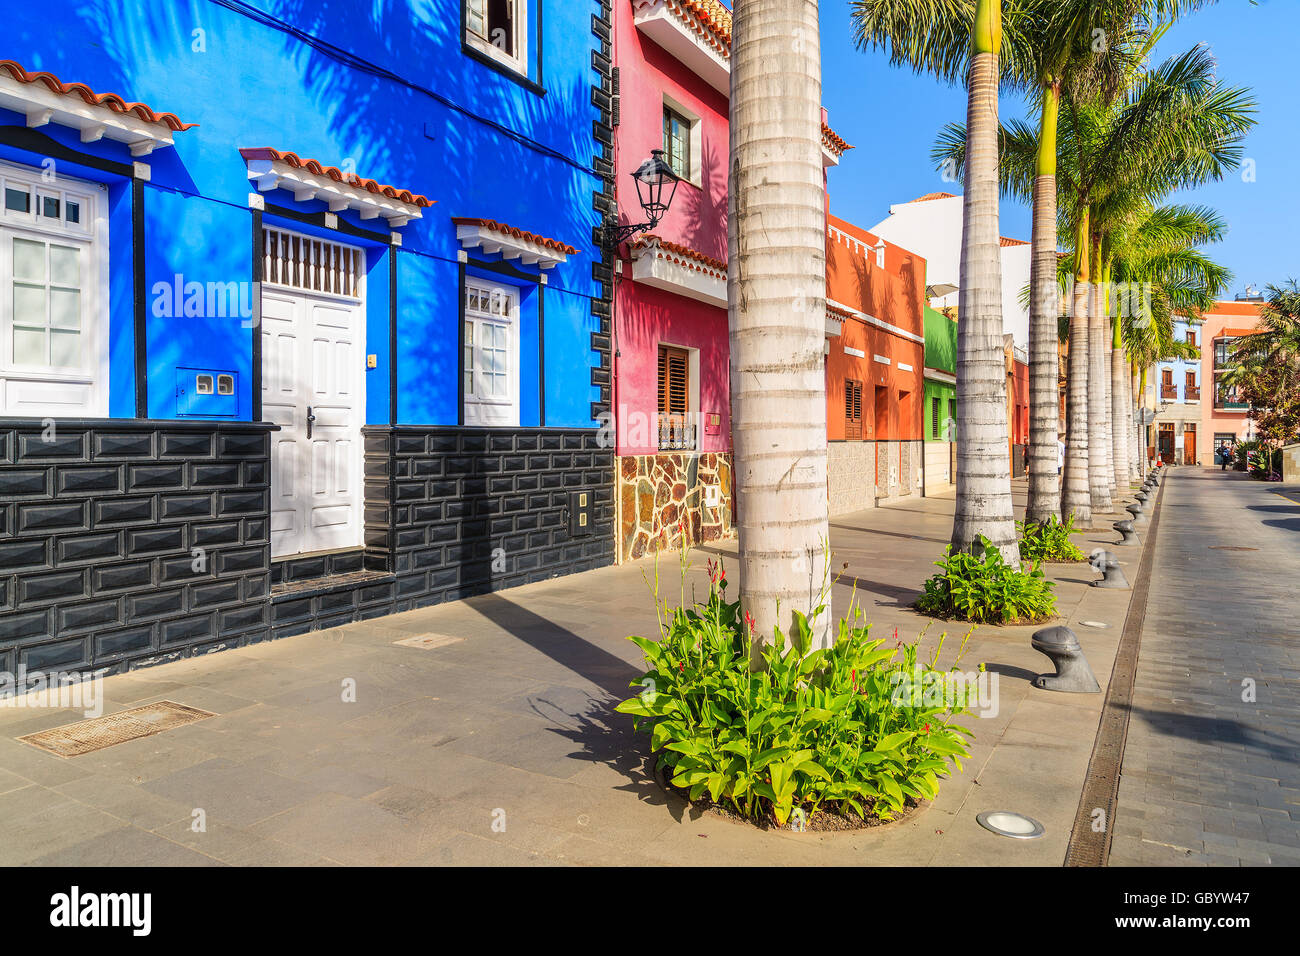 Maisons colorées et de palmiers sur rue dans la ville de Puerto de la Cruz, Tenerife, Canaries, Espagne Banque D'Images